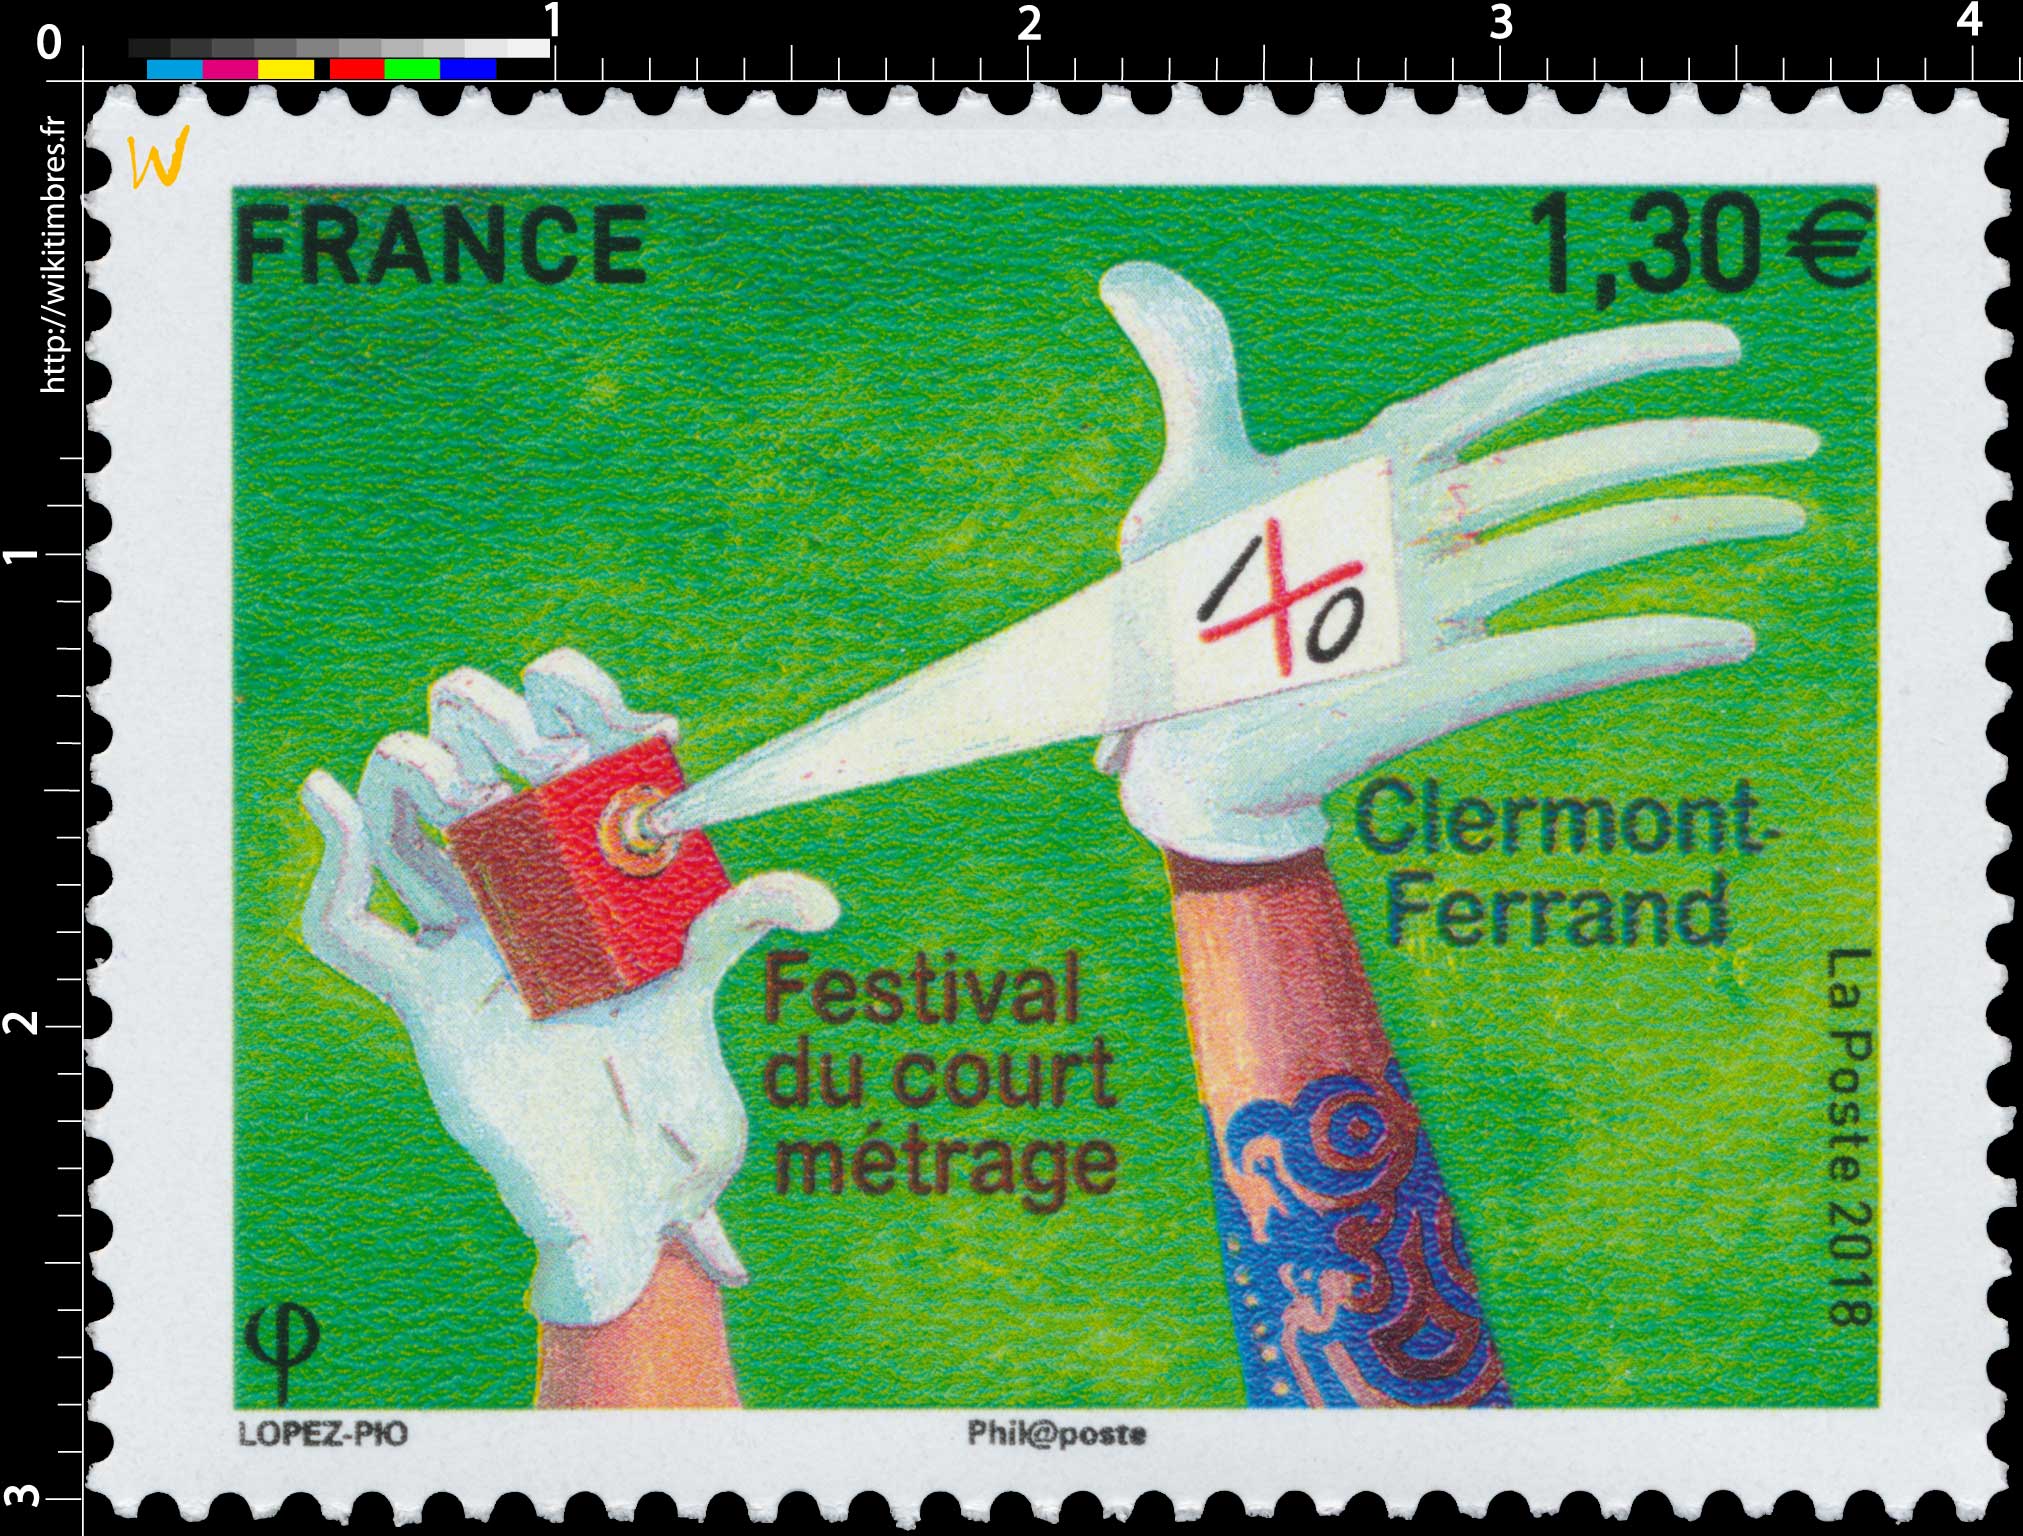 2018 Festival du court métrage Clermont-Ferrand